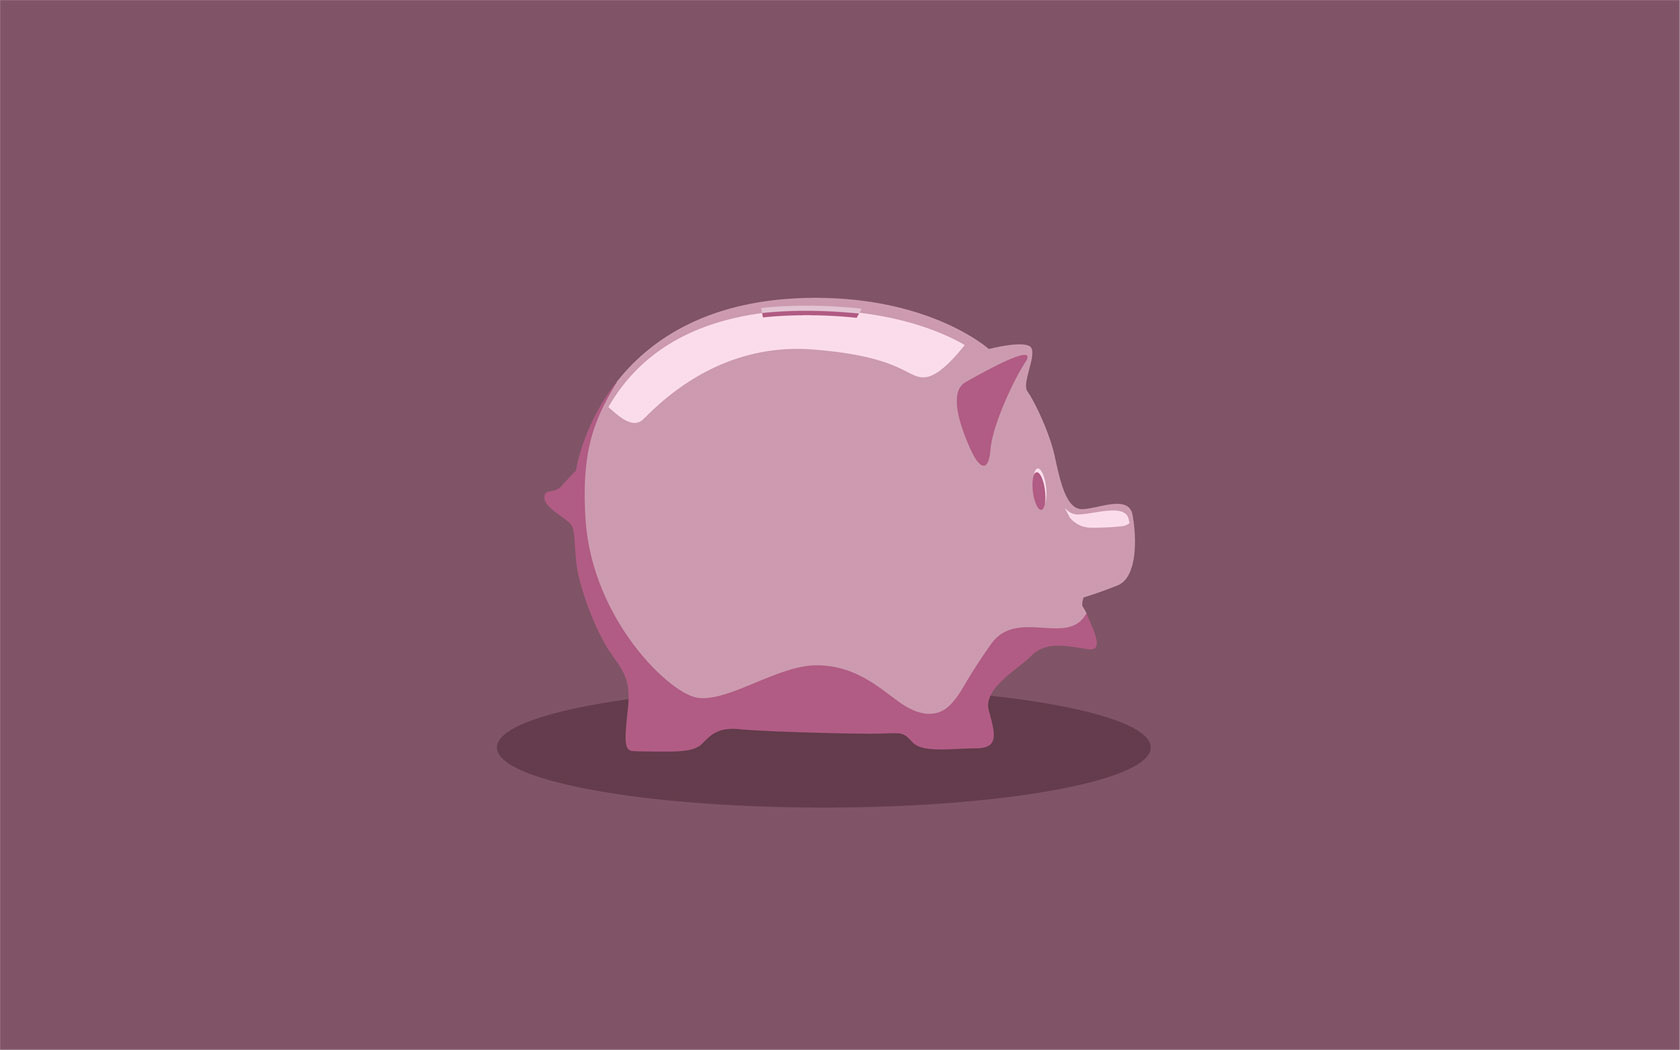 Little piggy bank wallpaper